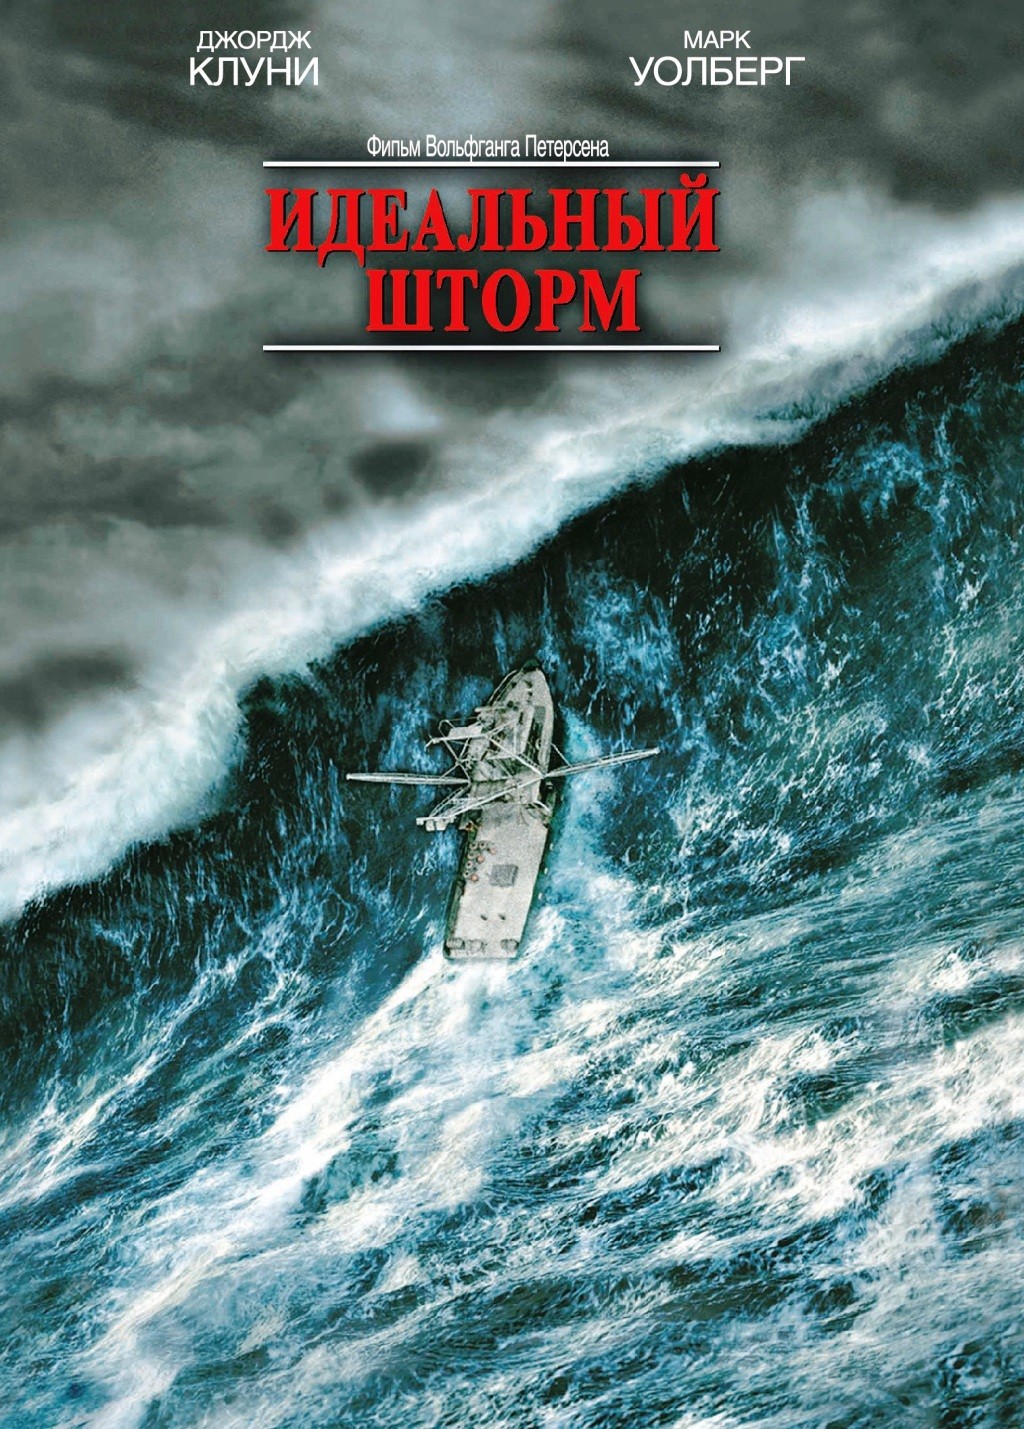 Идеальный шторм (региональное издание) (DVD)